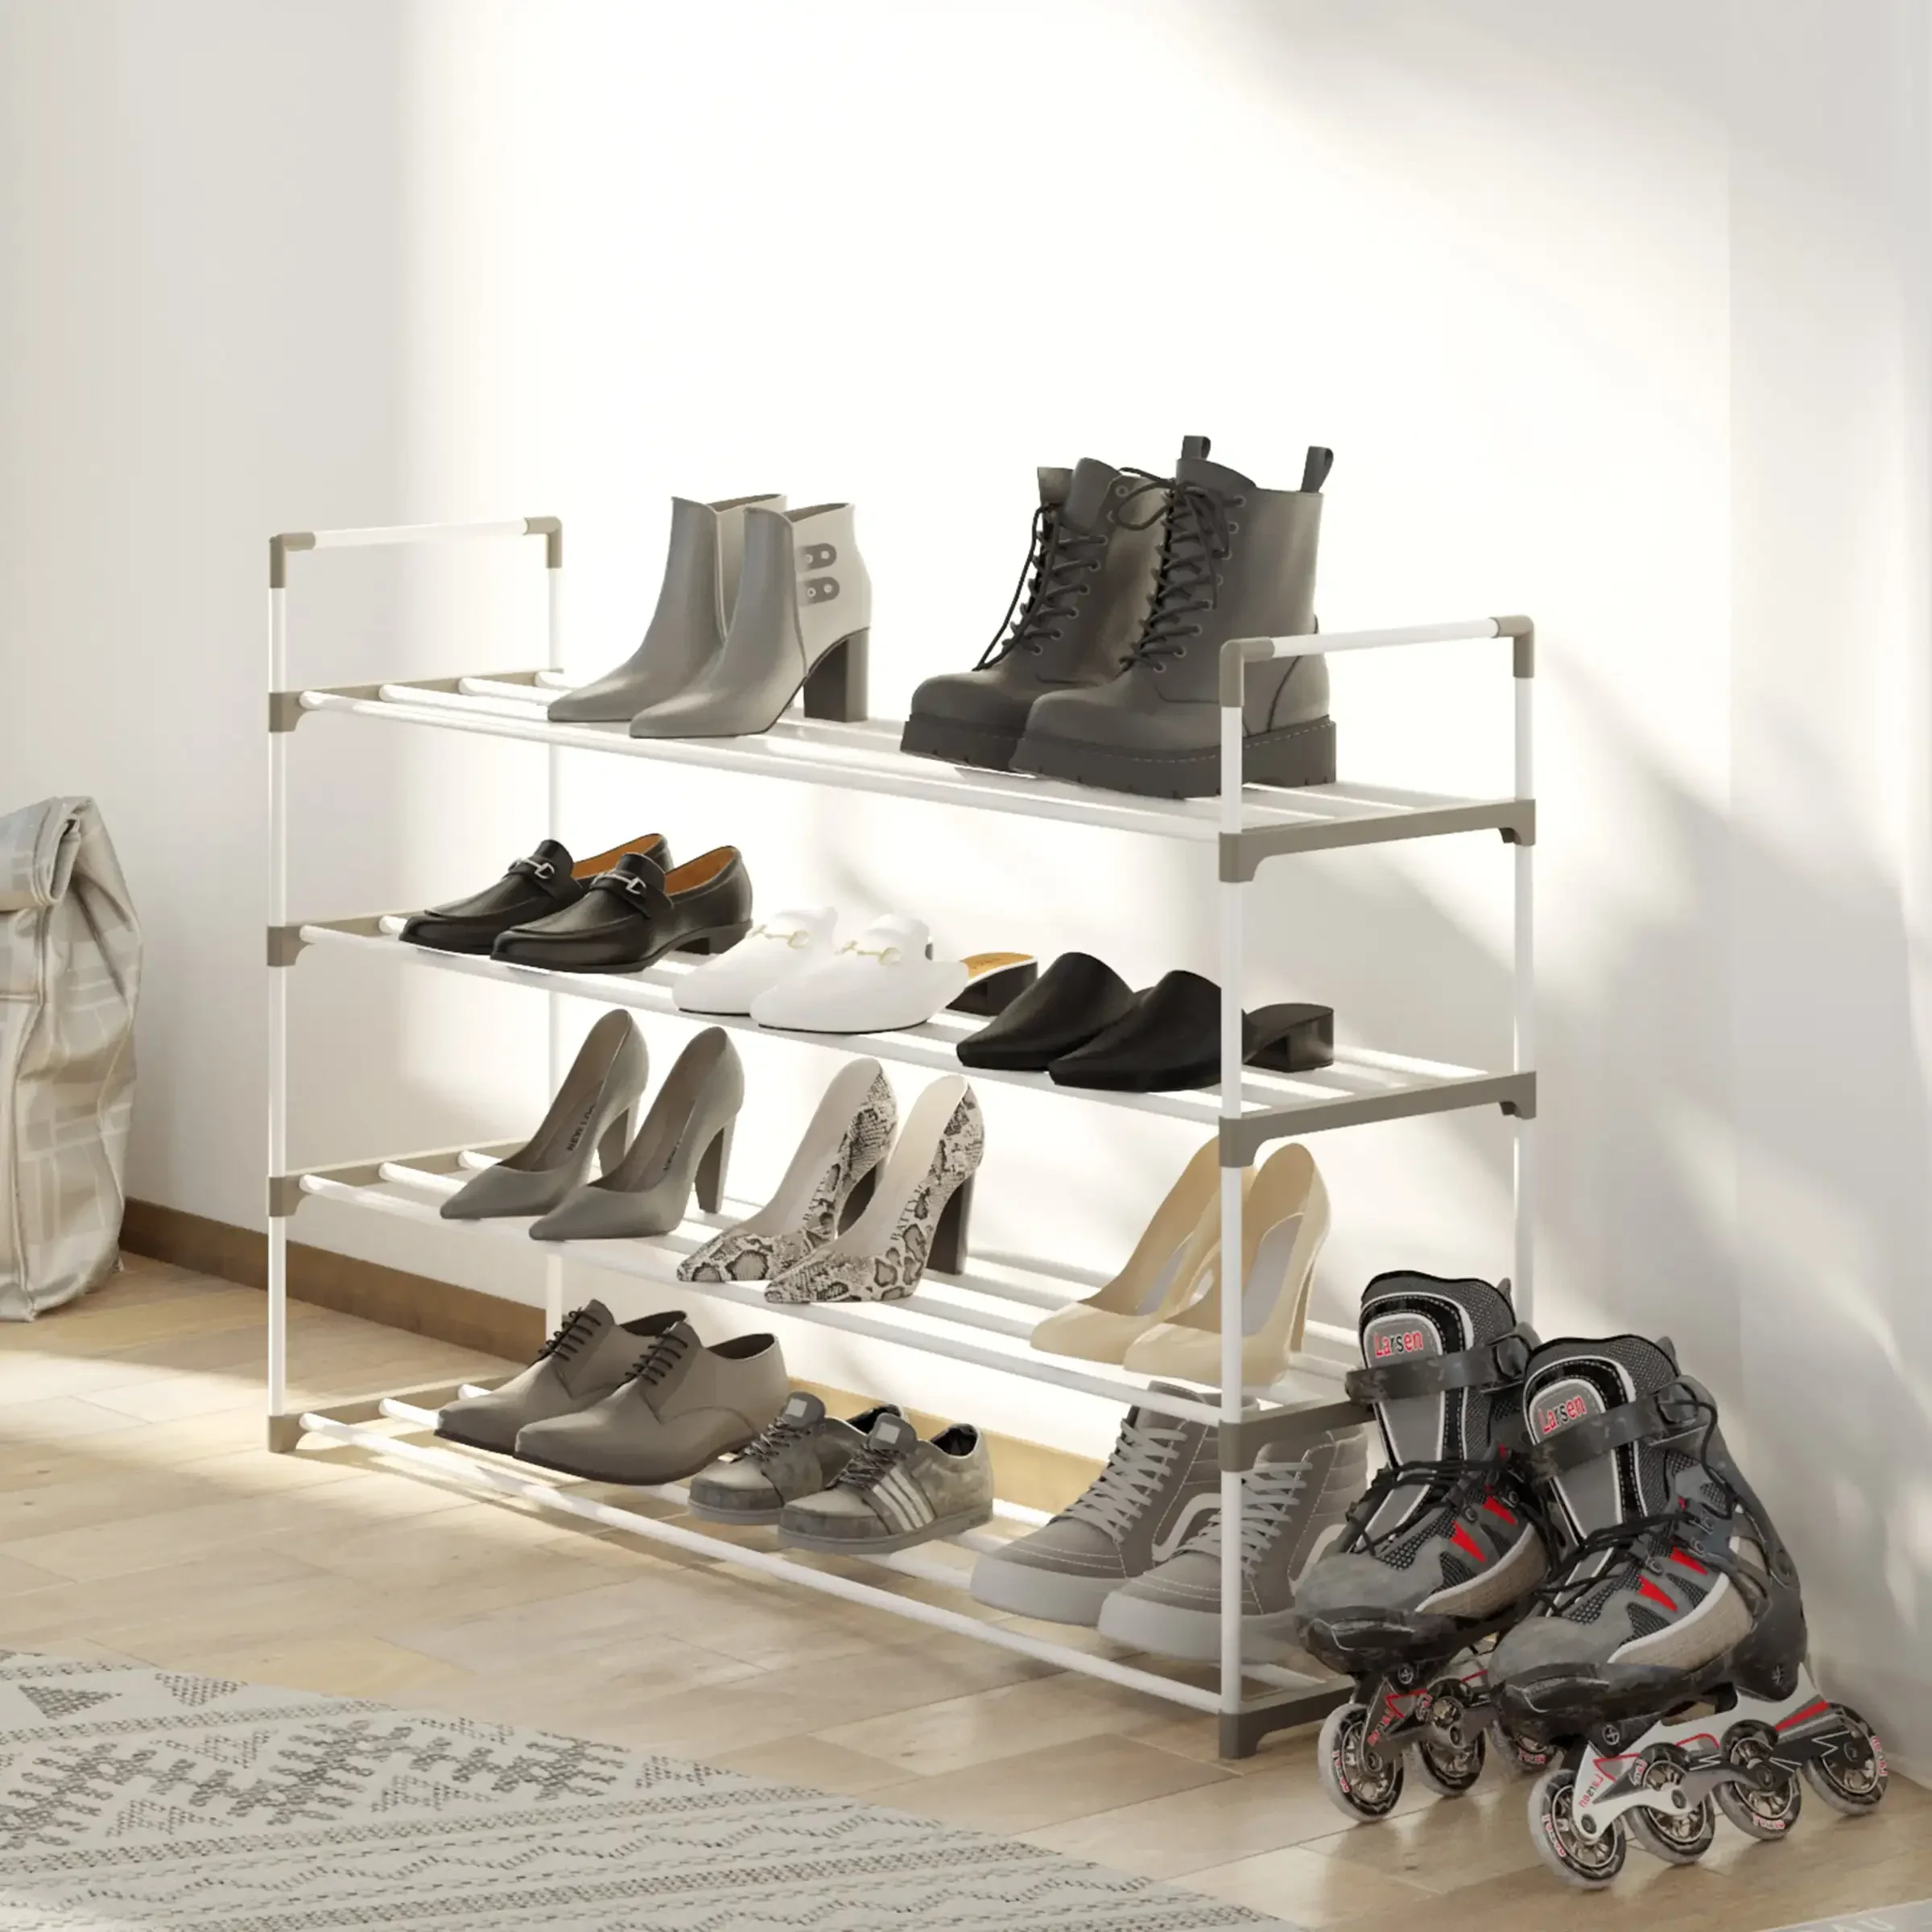 

Стойка для обуви-4-уровневый органайзер для обуви для шкафа, ванной комнаты, полка для прихожей вмещает 20 пар кроссовок, каблуков, ботинок (белый)